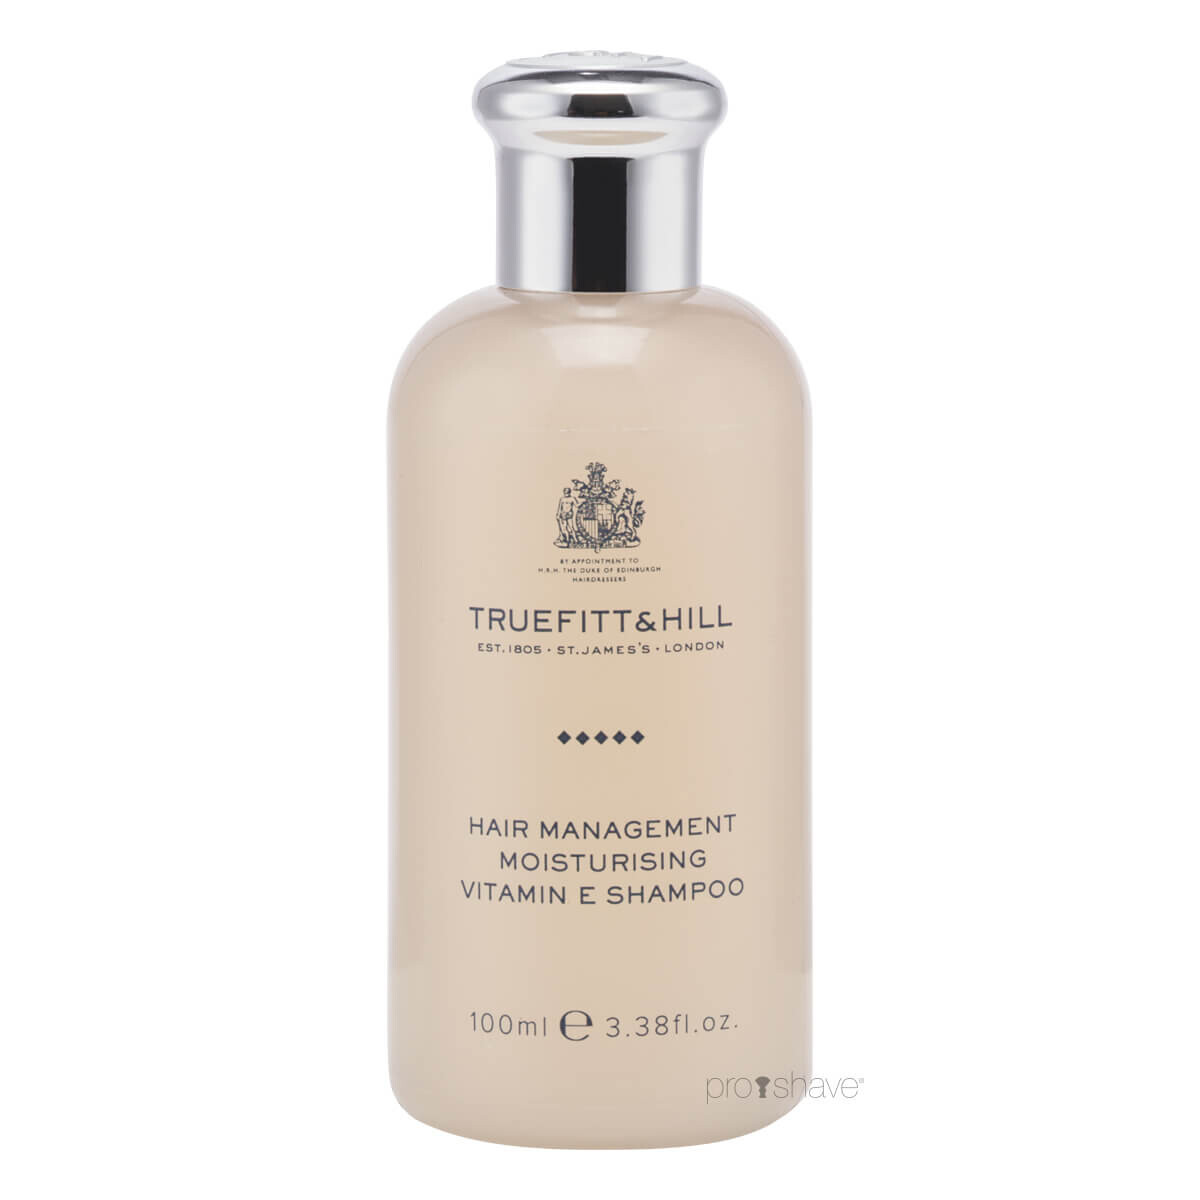 5: Truefitt & Hill Moisturising Vitamin E Shampoo, 100 ml.